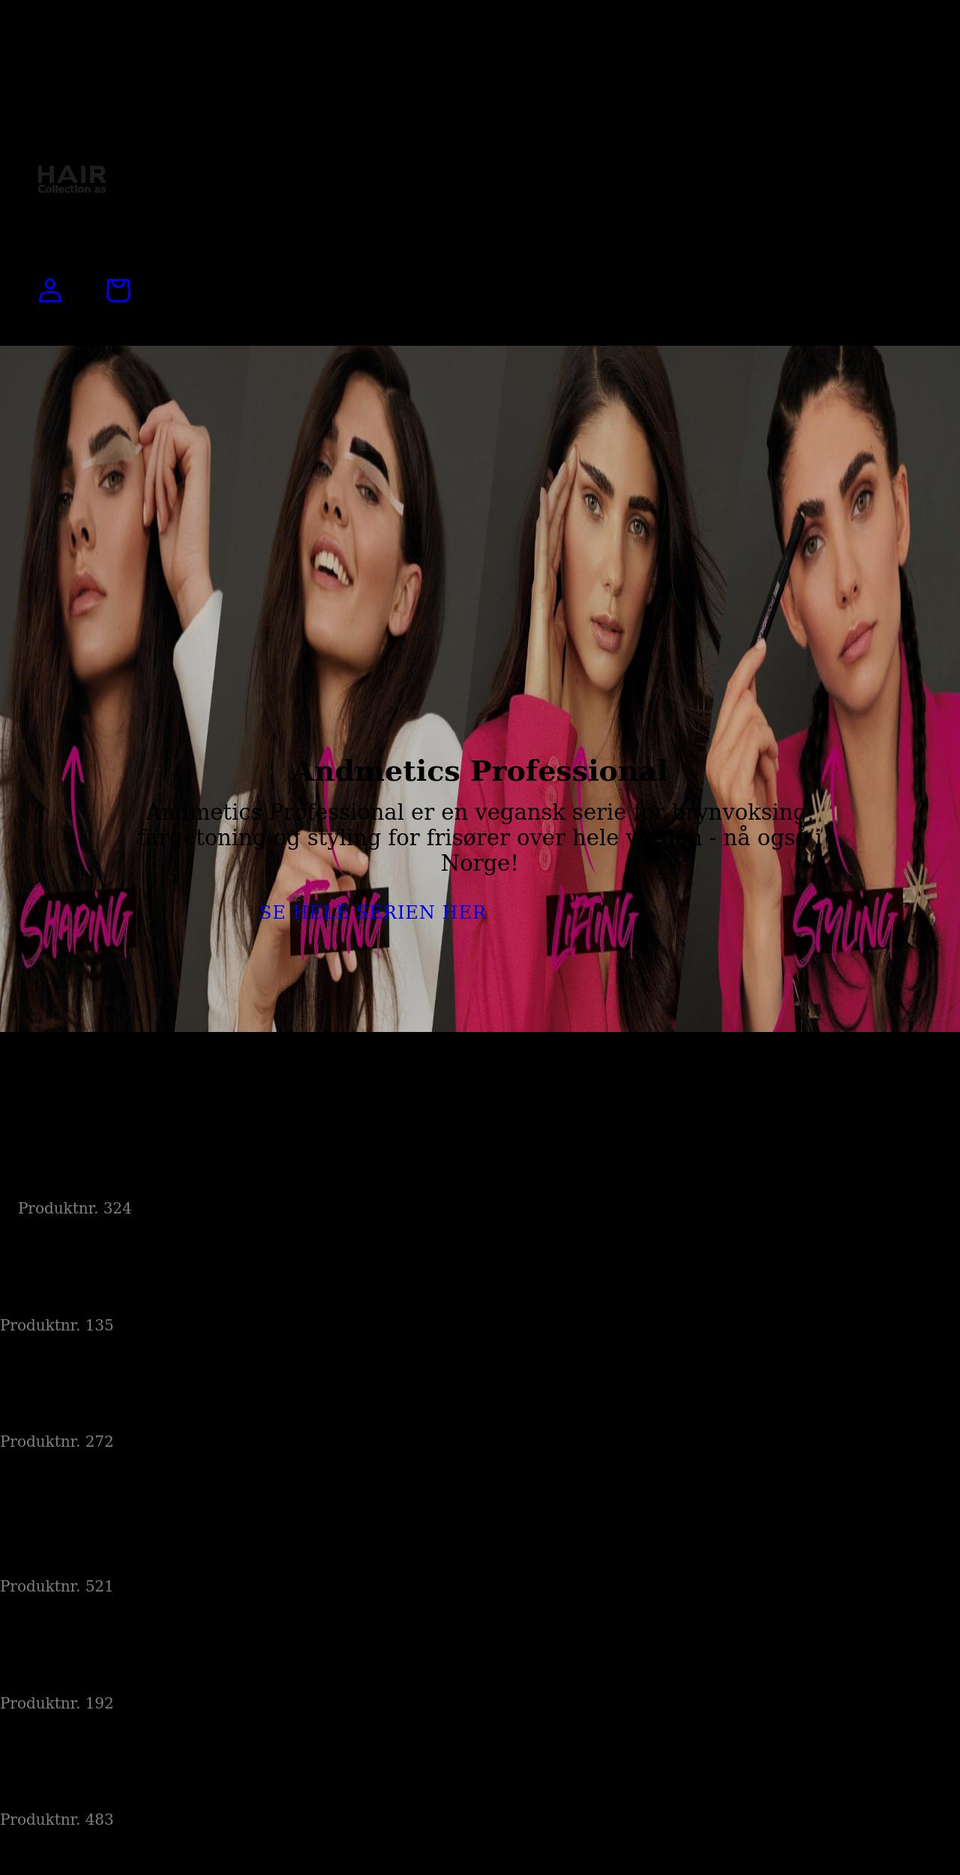 haircollection.no shopify website screenshot